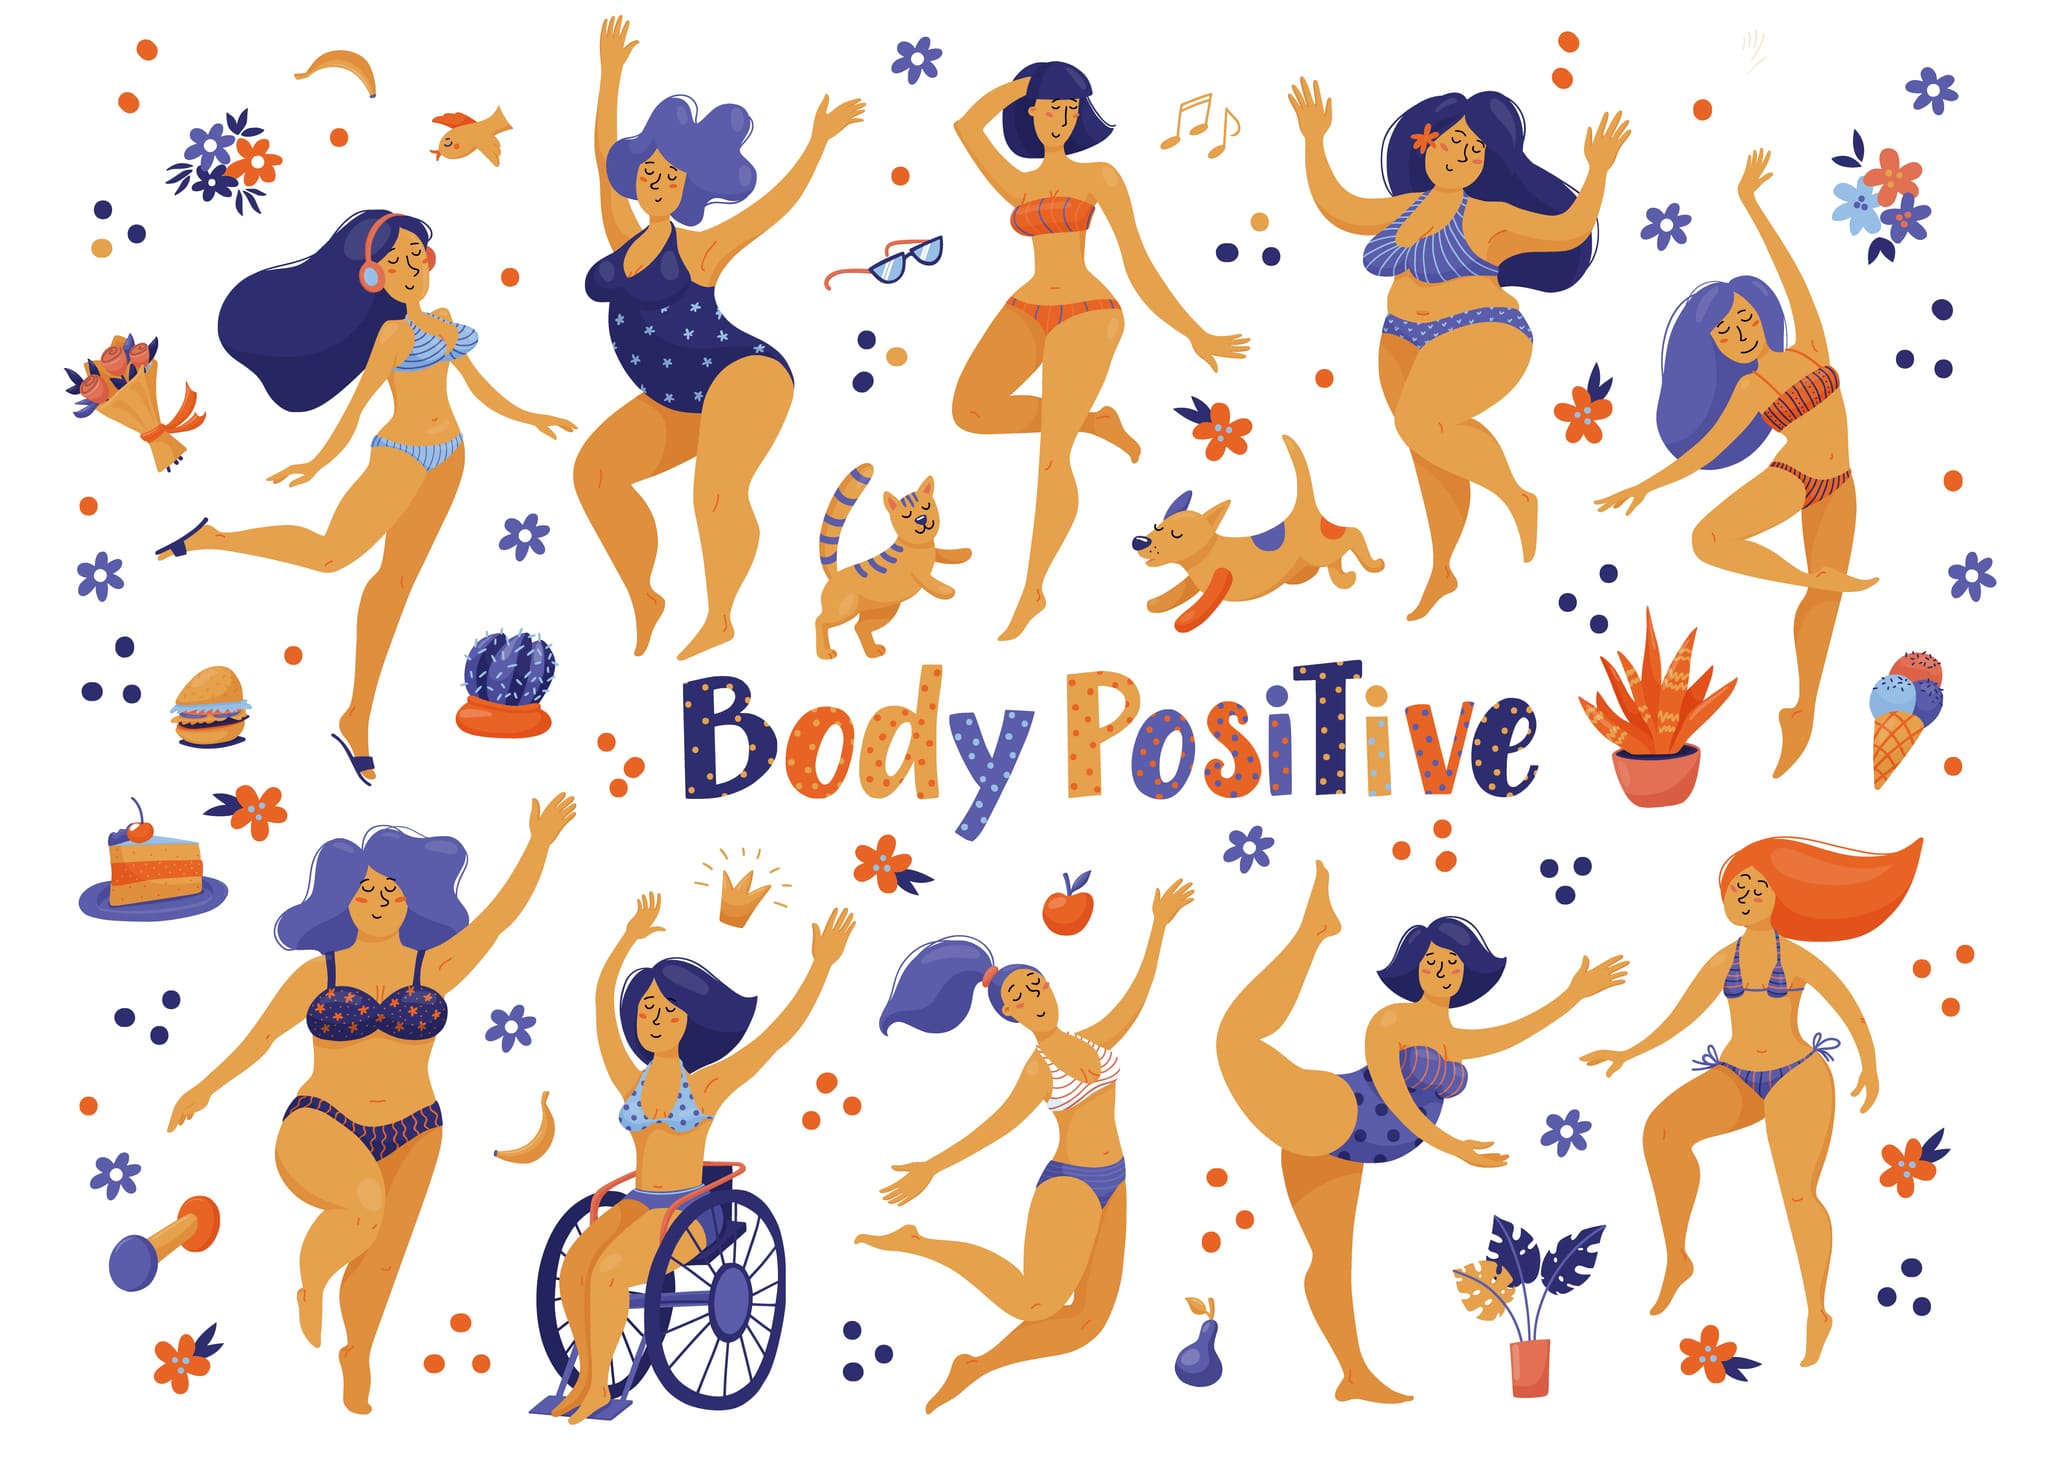  Body positive